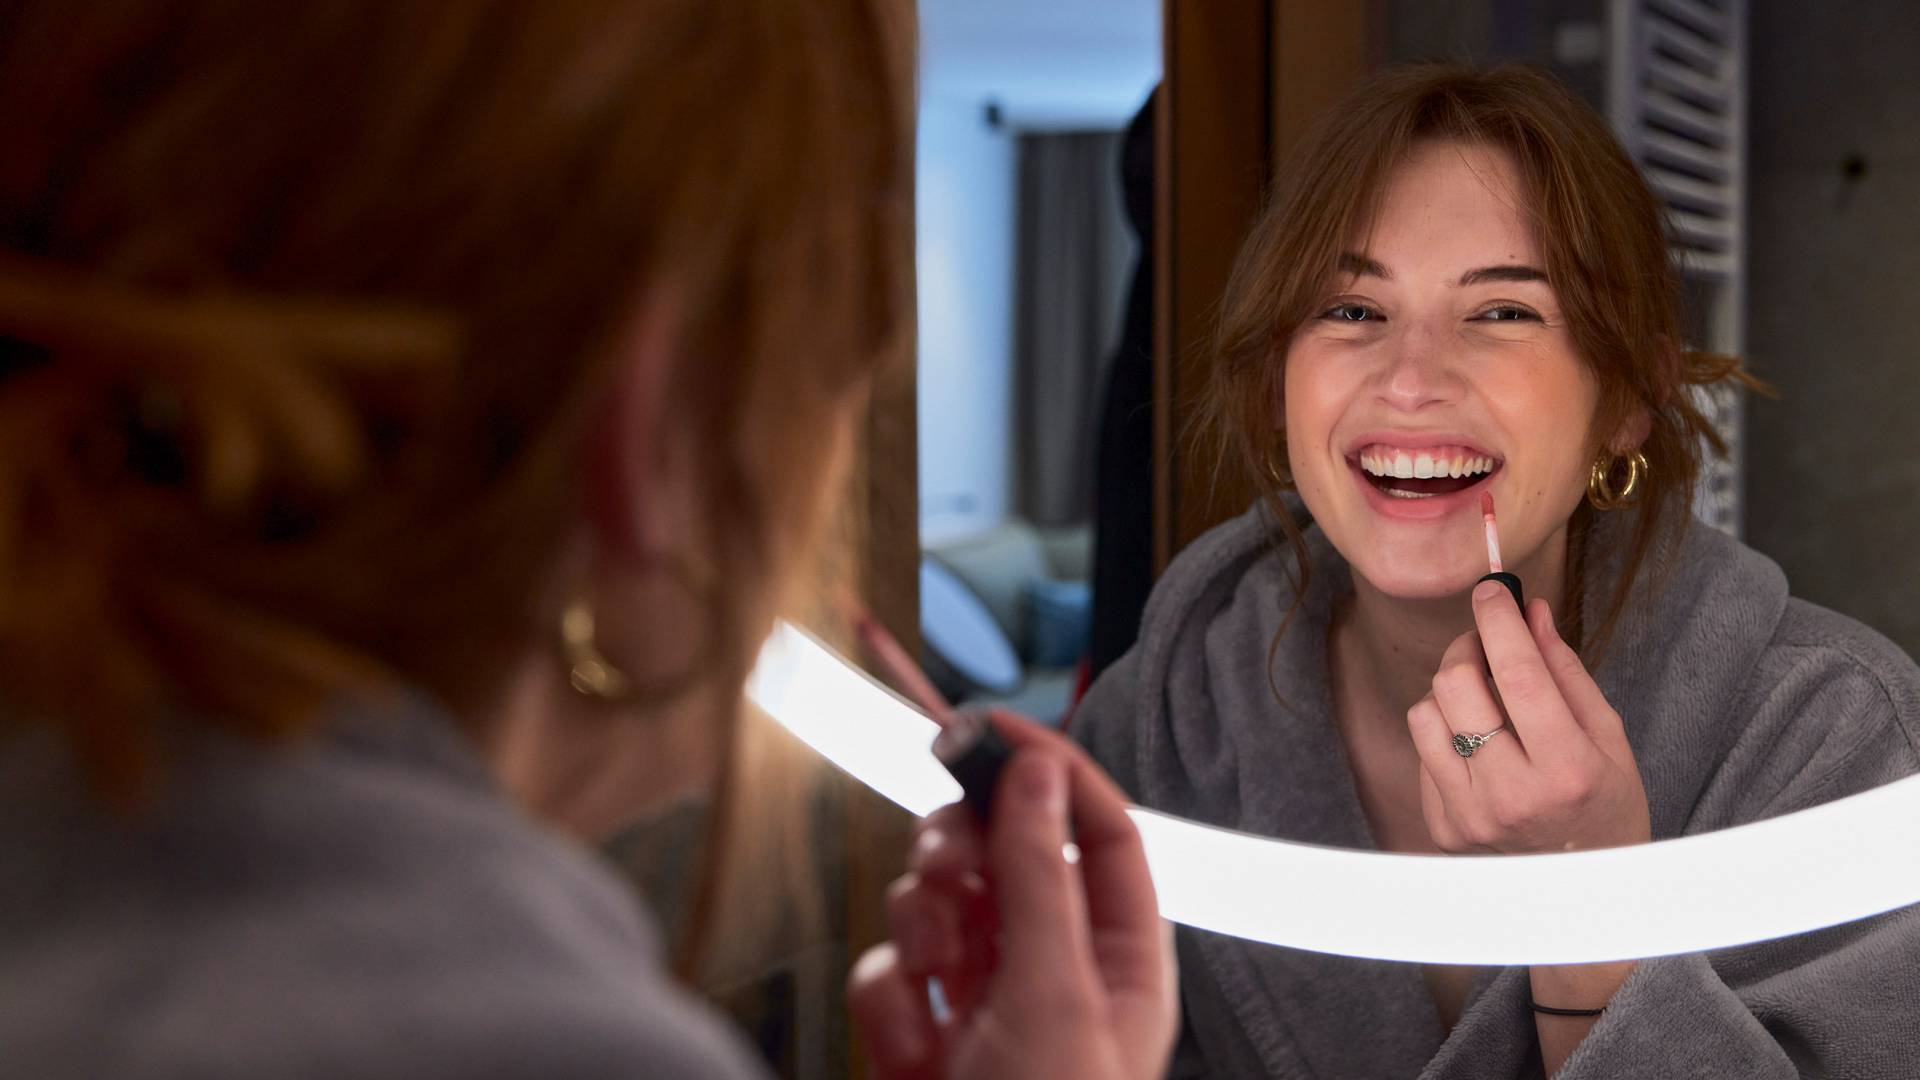 Frau trägt Lipgloss vor beleuchteten Spiegel auf und lacht dabei